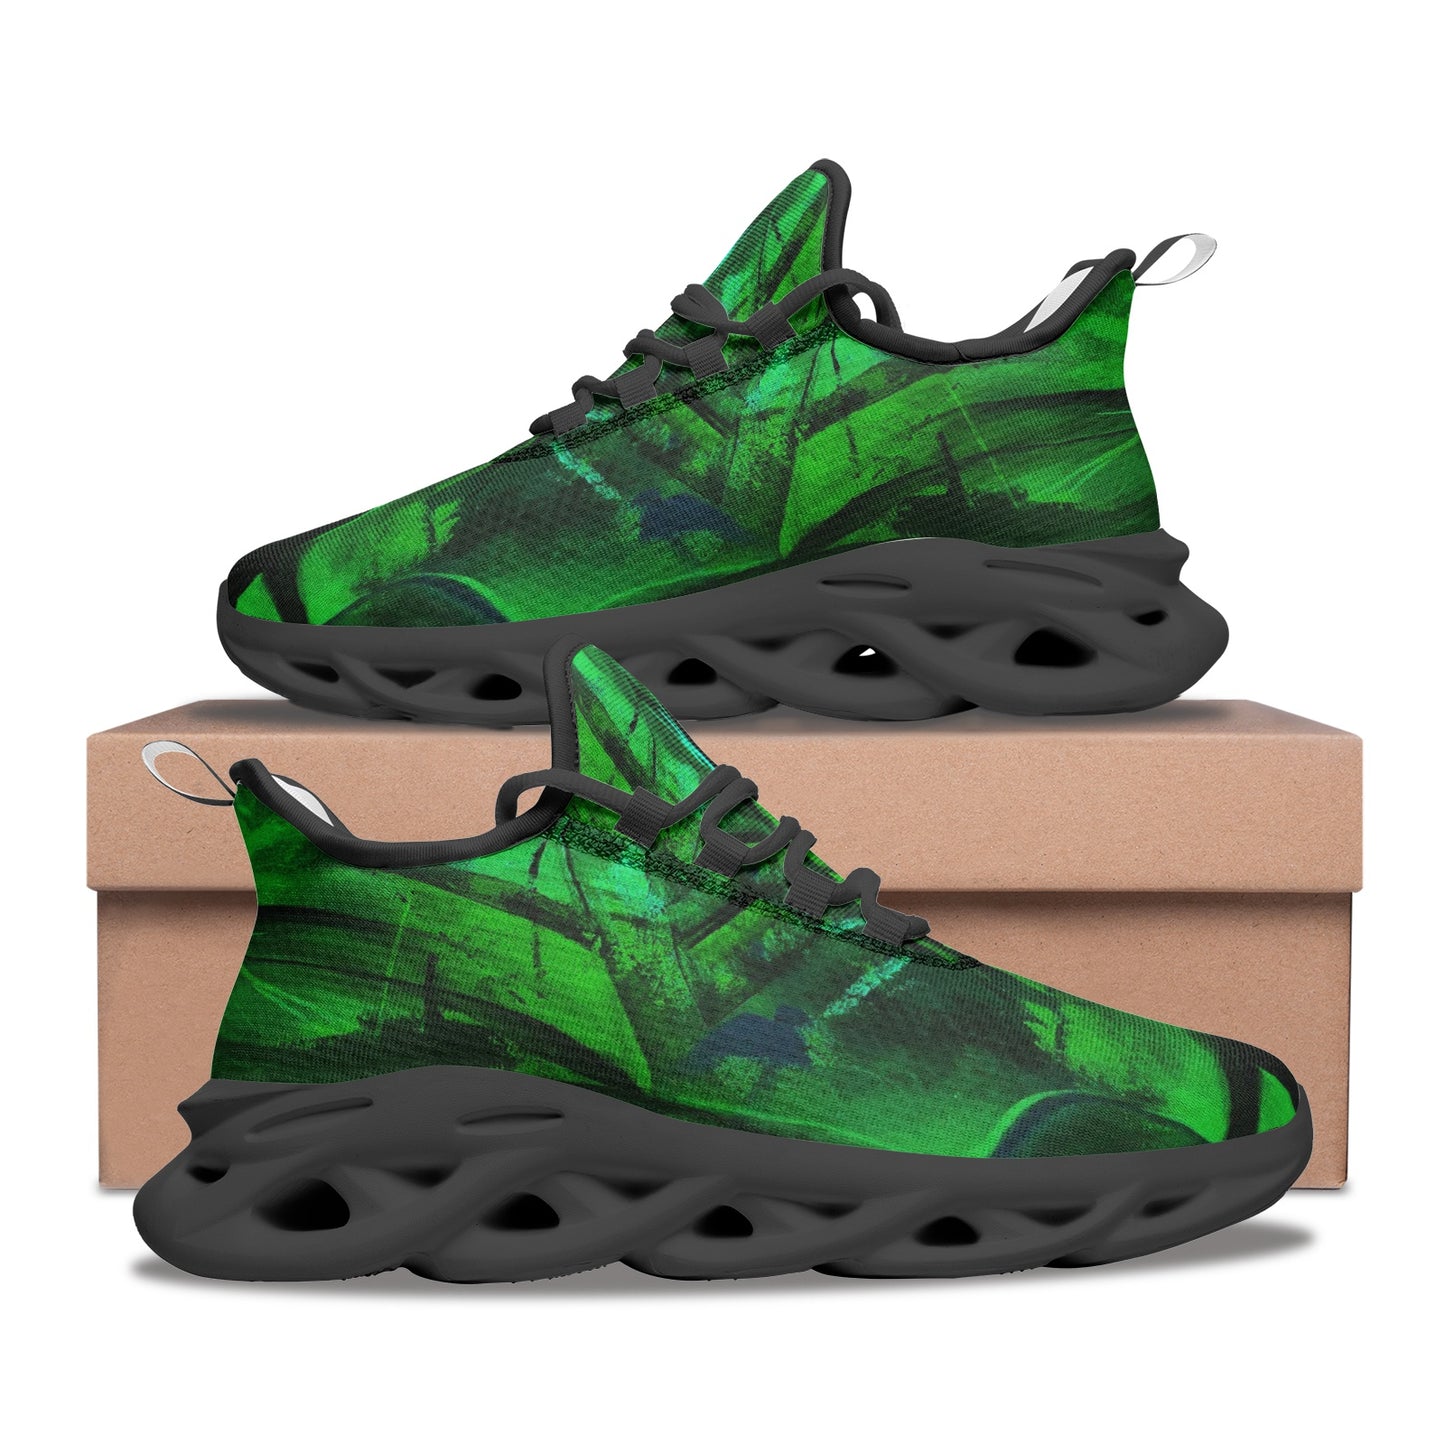 "Greenone" unisex sneakers